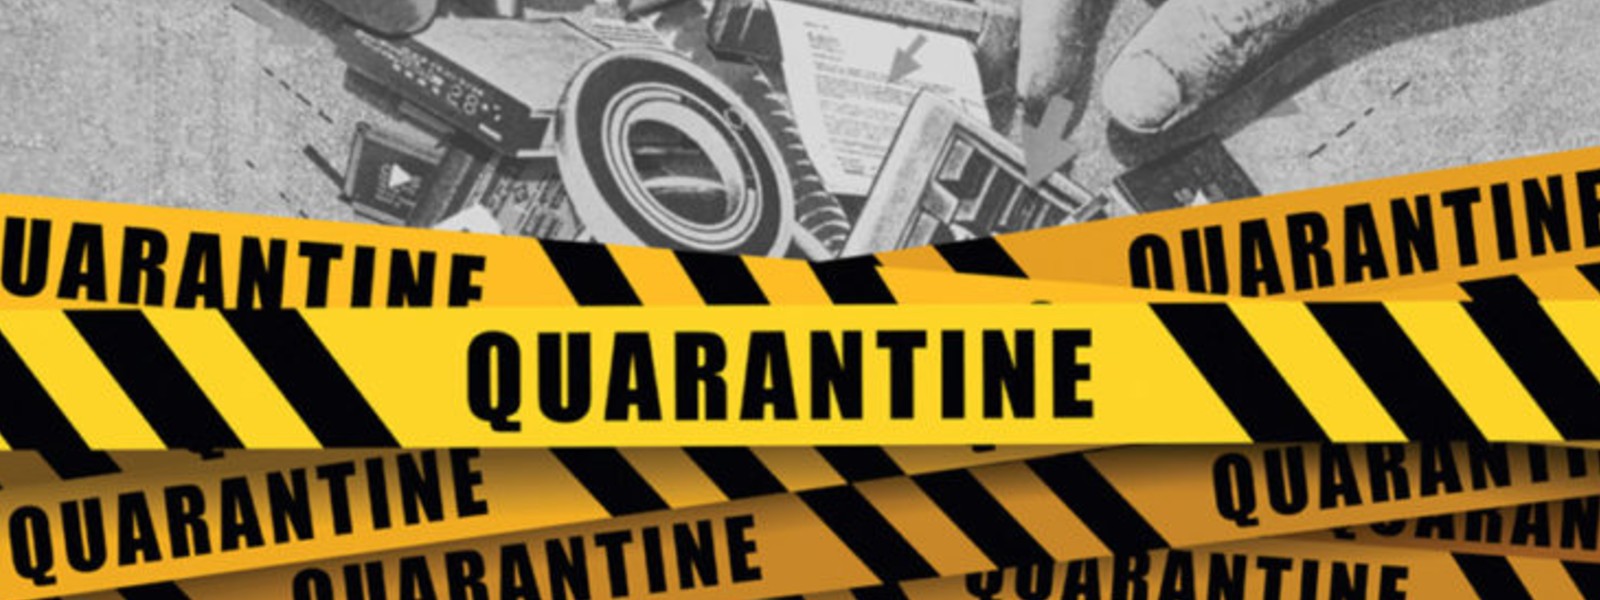 60 people in Puttalam sent for quarantine